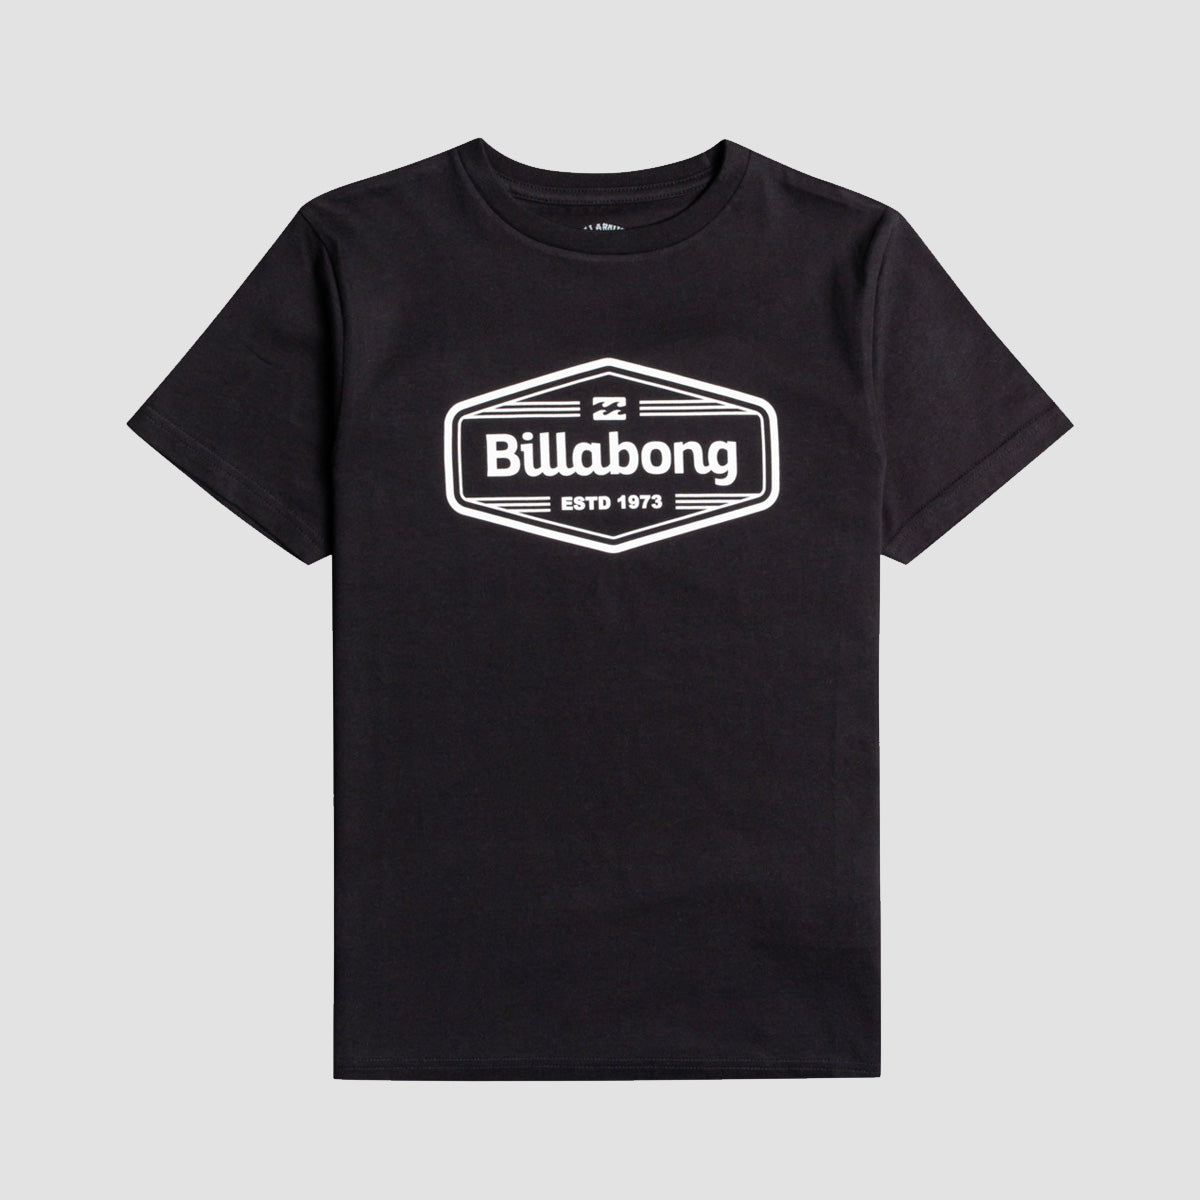 Billabong Trademark T-Shirt Black - Kids